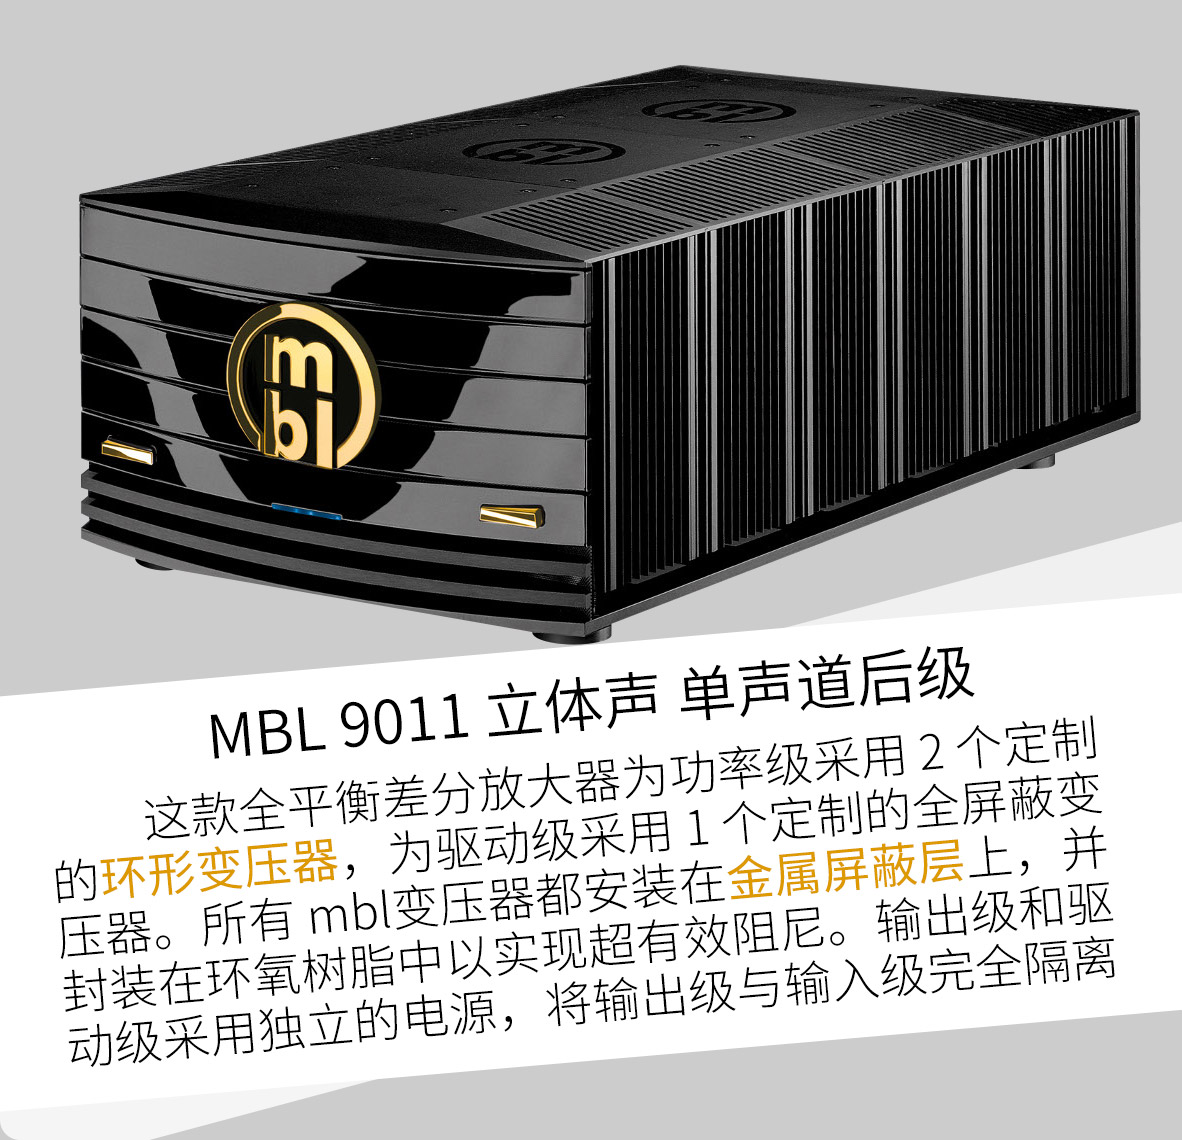 MBL系统，MBL 1621A转盘，1611F解码，6010D参考级前级，9011单声道后级，101X-TREME大葫芦落地箱